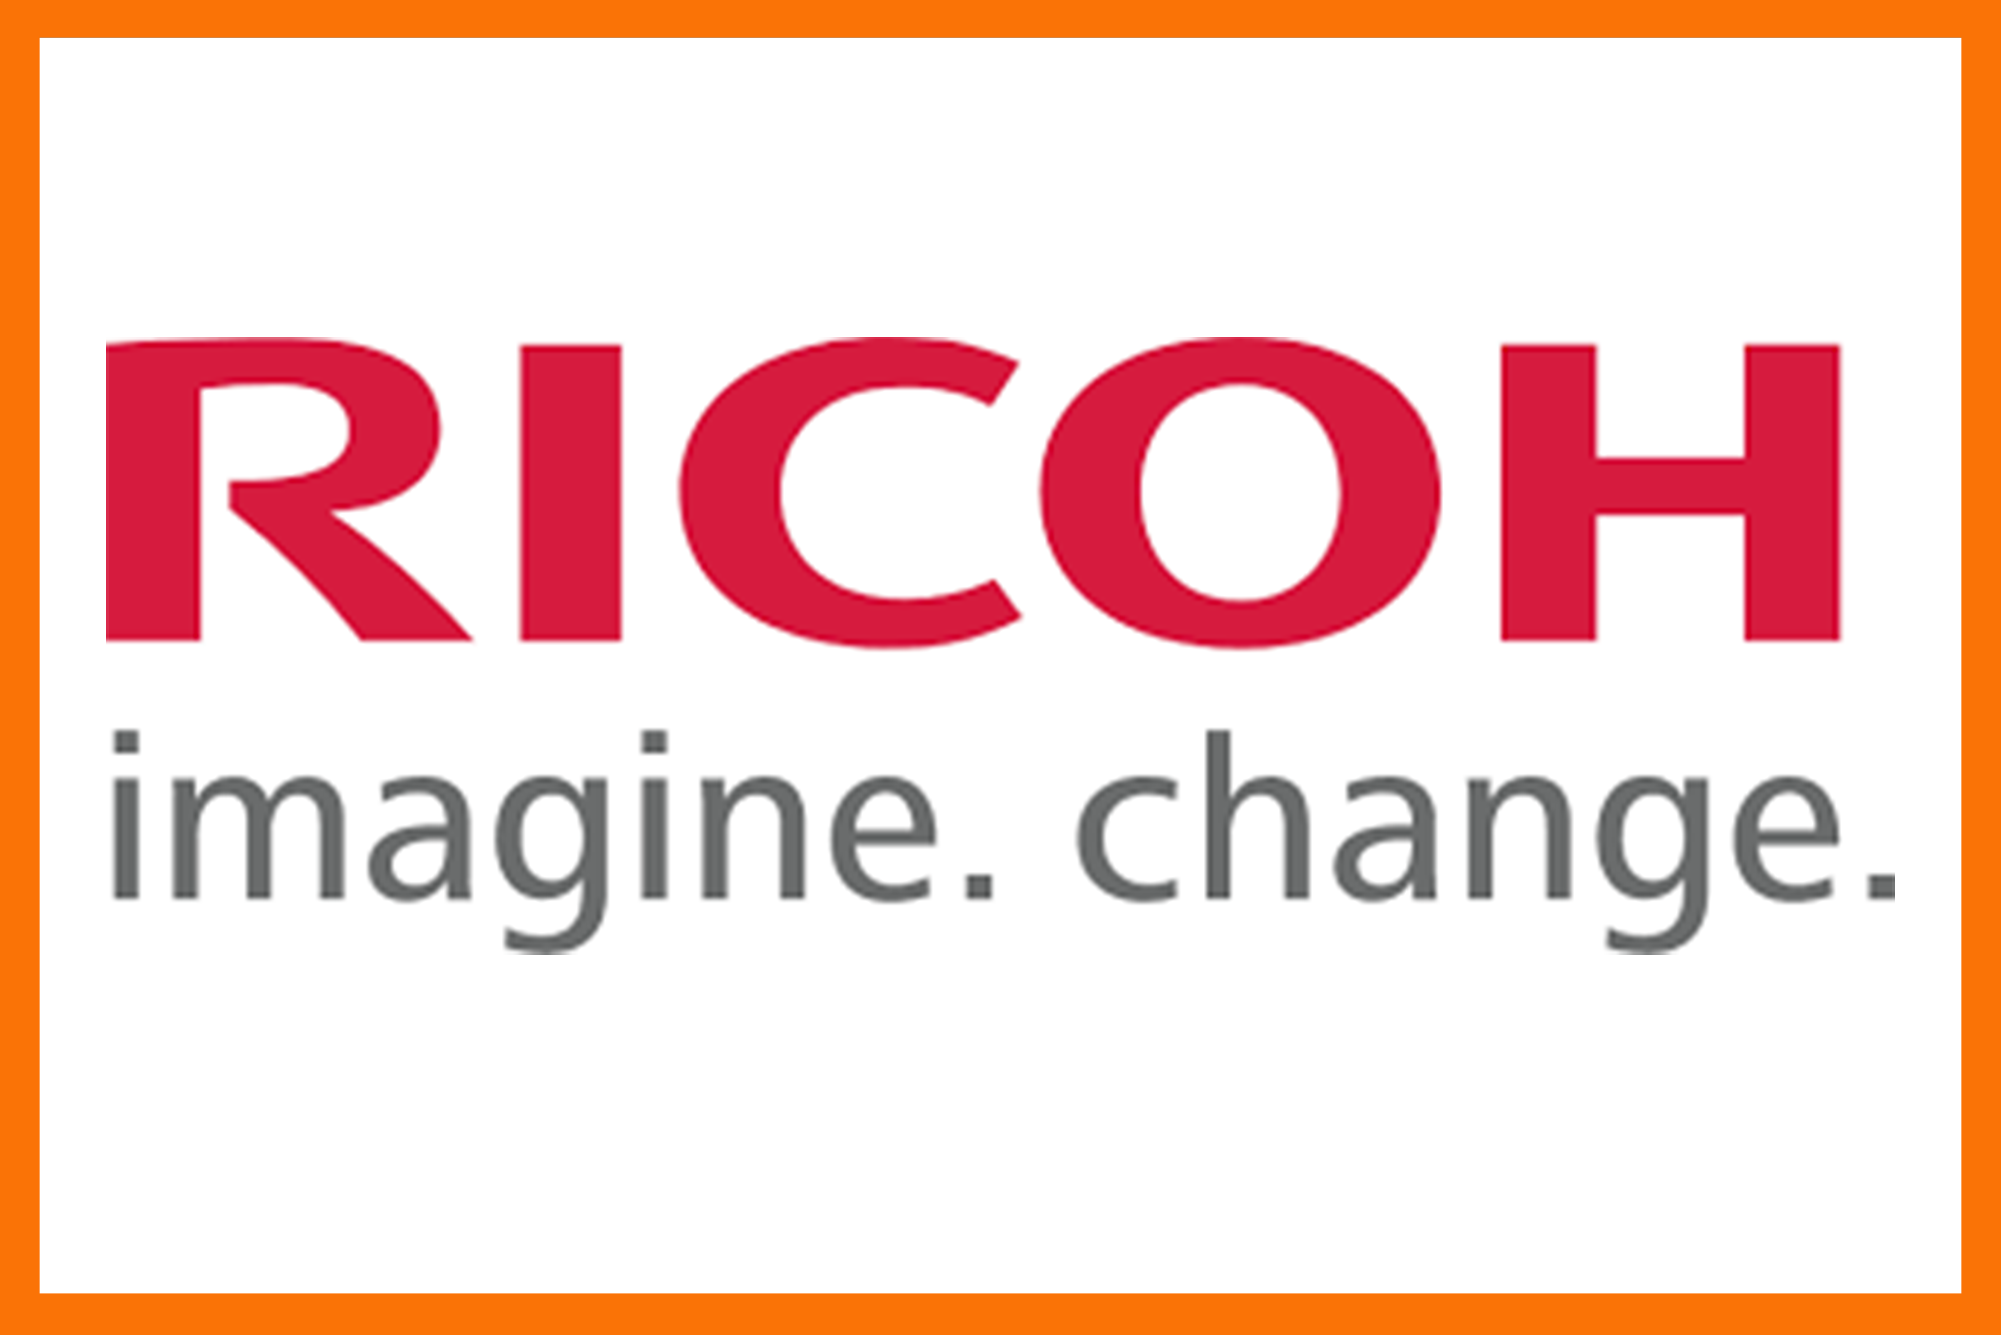 Ricoh VBCC logo